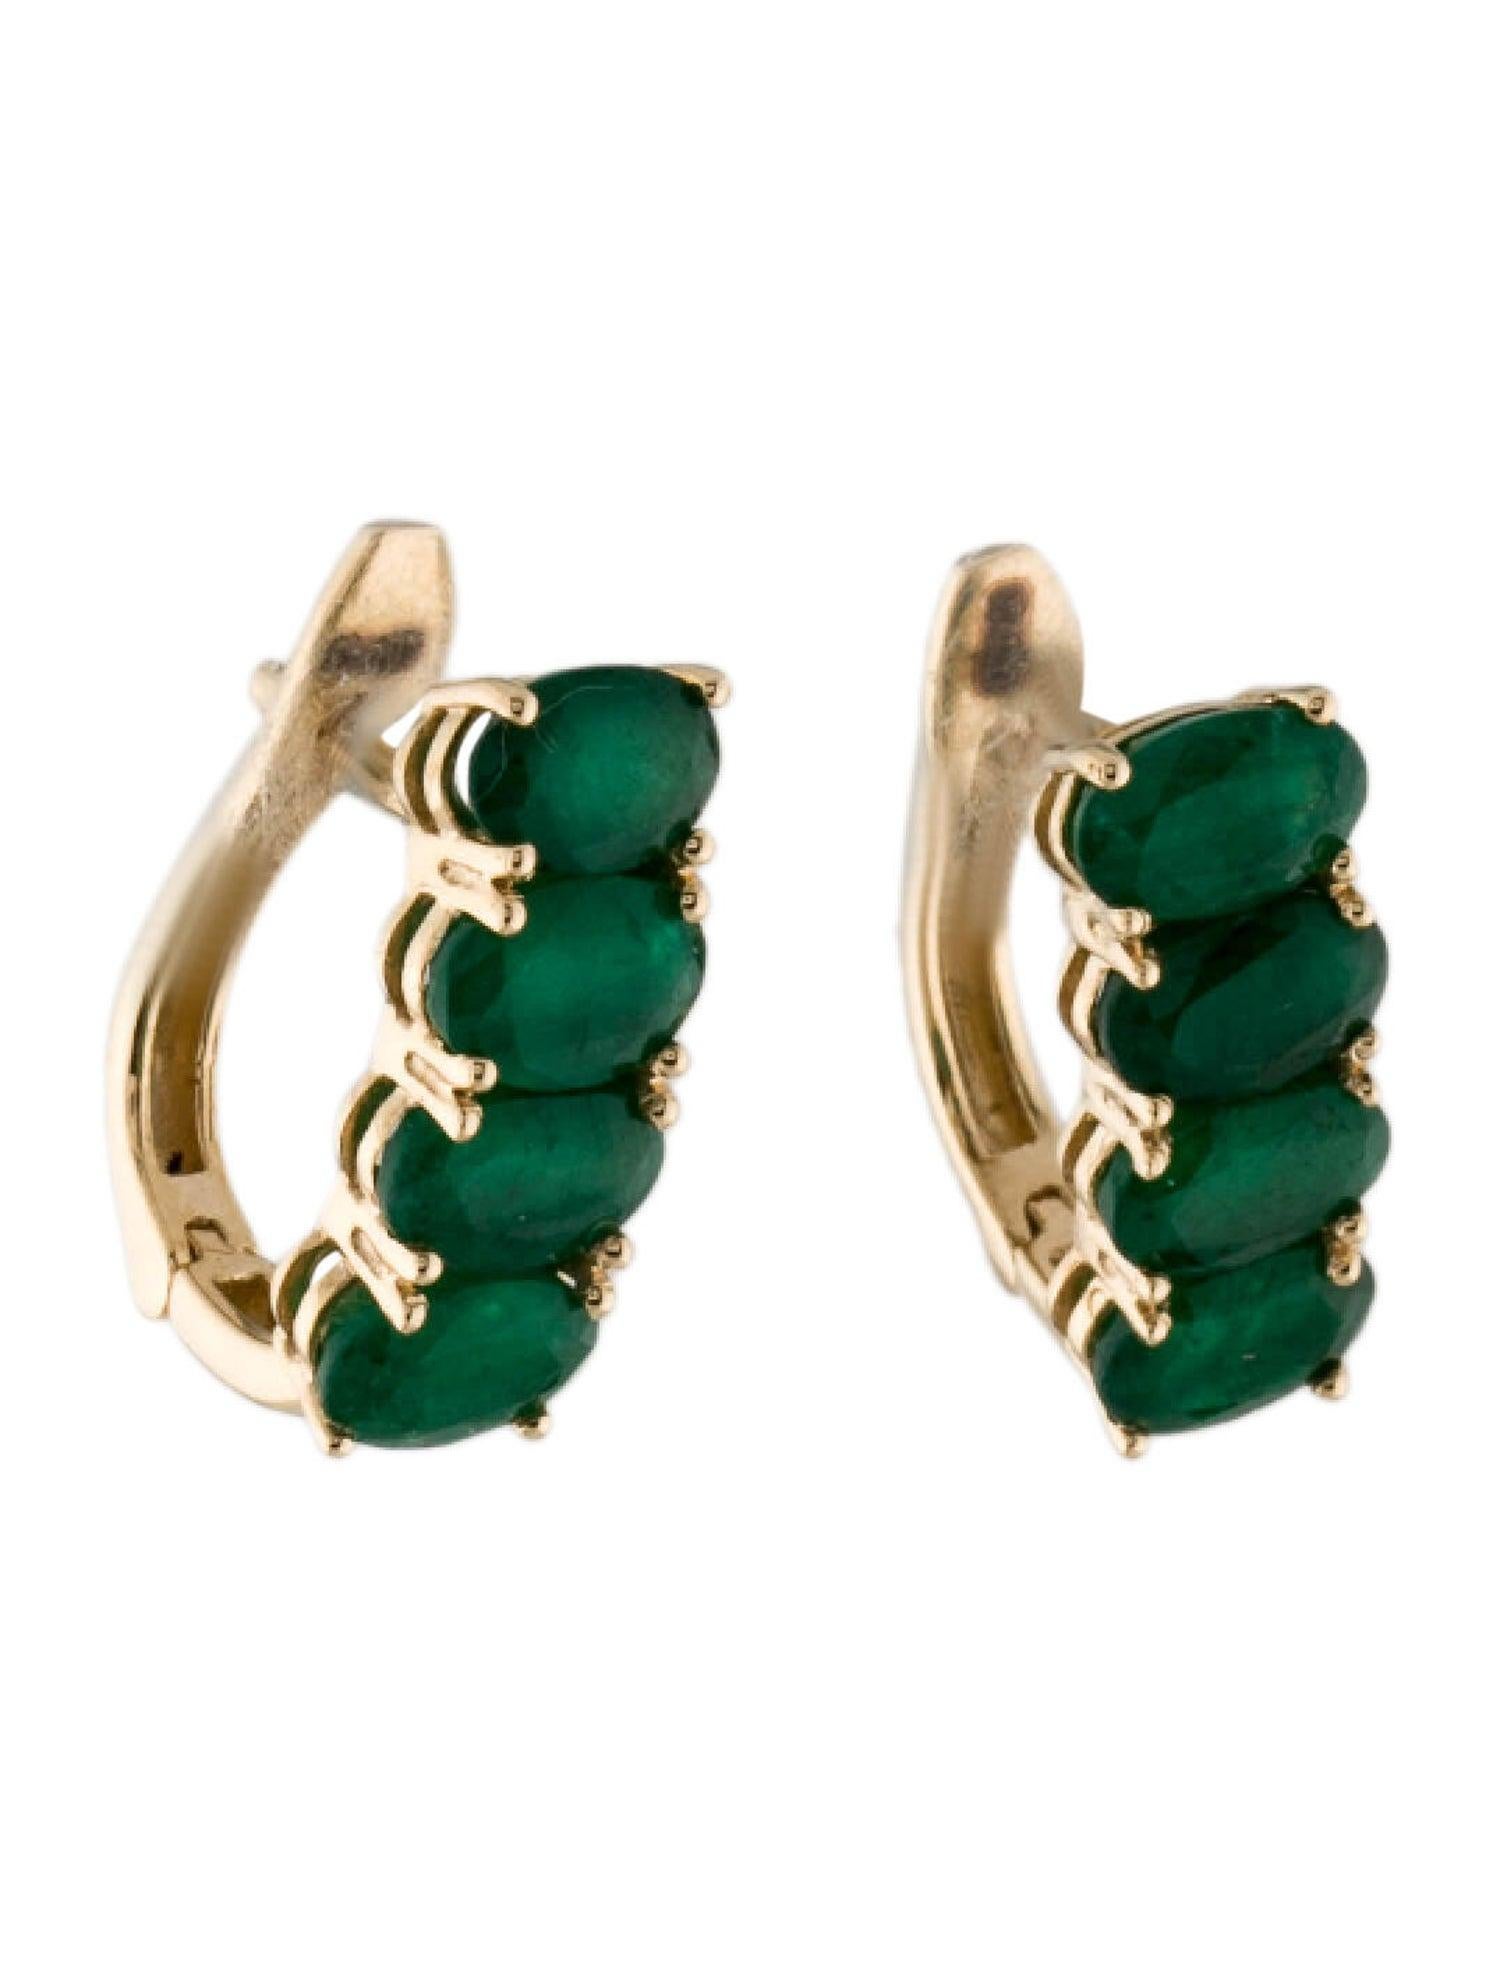 Tauchen Sie ein in die bezaubernde Anziehungskraft der Nature mit unseren Forest Ferns Emerald Earrings von Jeweltique. Dieses exquisite Paar ist ein Zeugnis für die faszinierende Schönheit, die inmitten üppiger, grüner Landschaften zu finden ist.